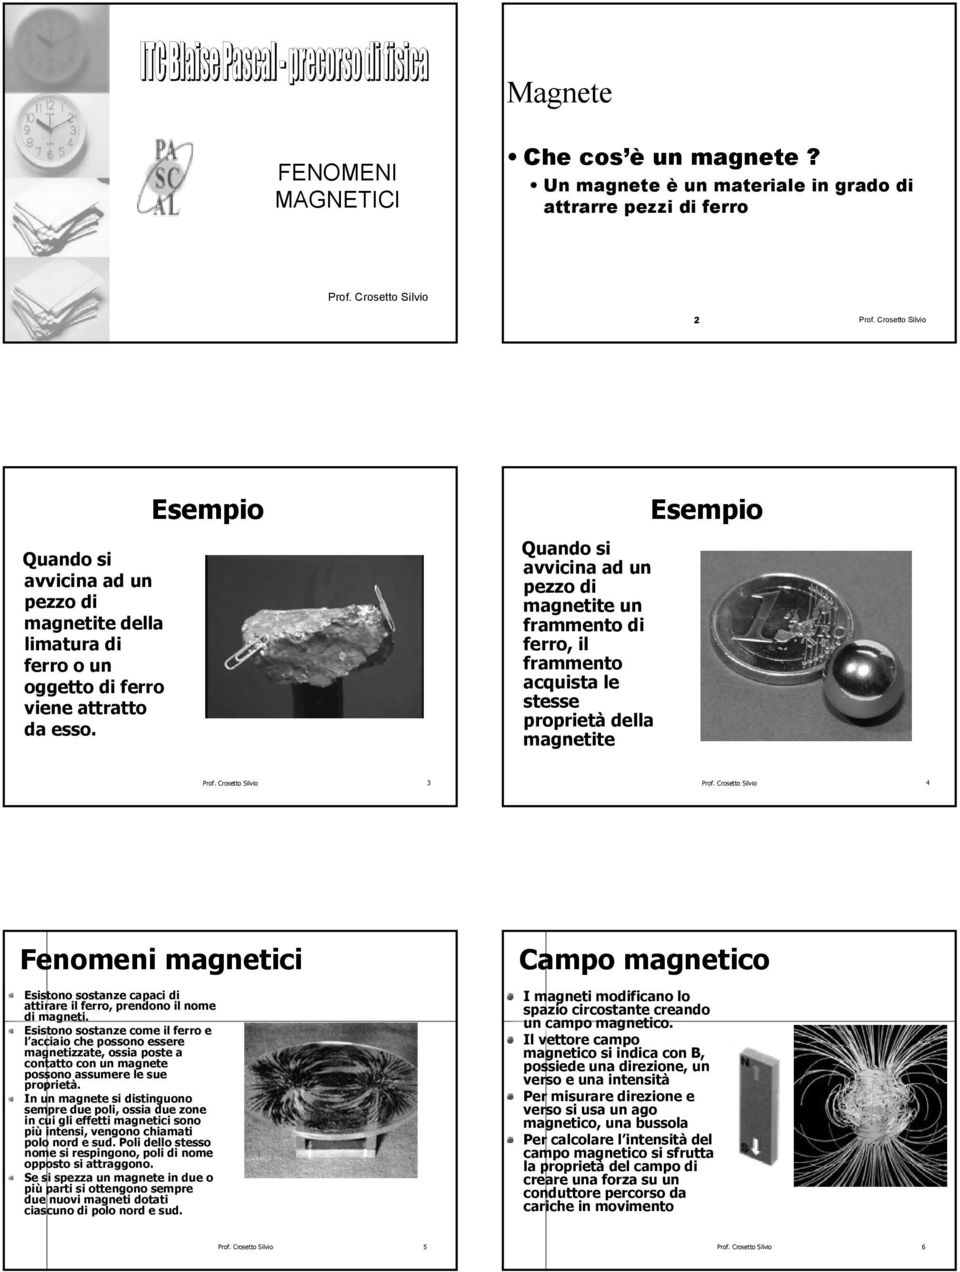 Quando si avvicina ad un pezzo di magnetite un frammento di ferro, il frammento acquista le stesse proprietà della magnetite Prof. Crosetto Silvio 3 Prof.